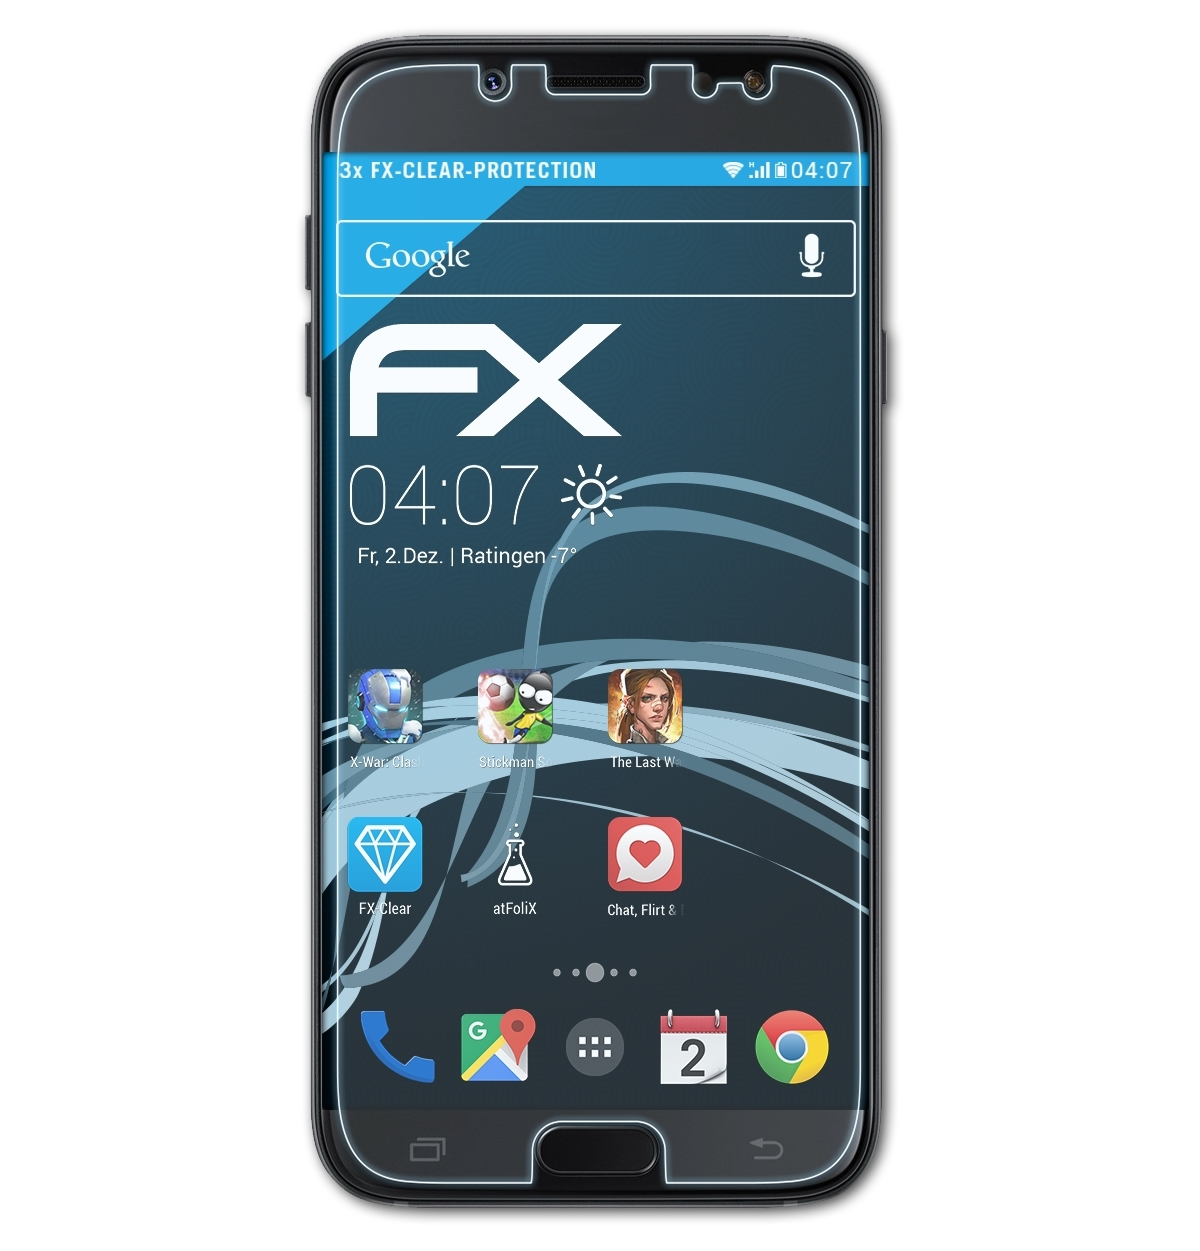 Samsung 3x J7 Galaxy (2017) FX-Clear Displayschutz(für Duos) ATFOLIX